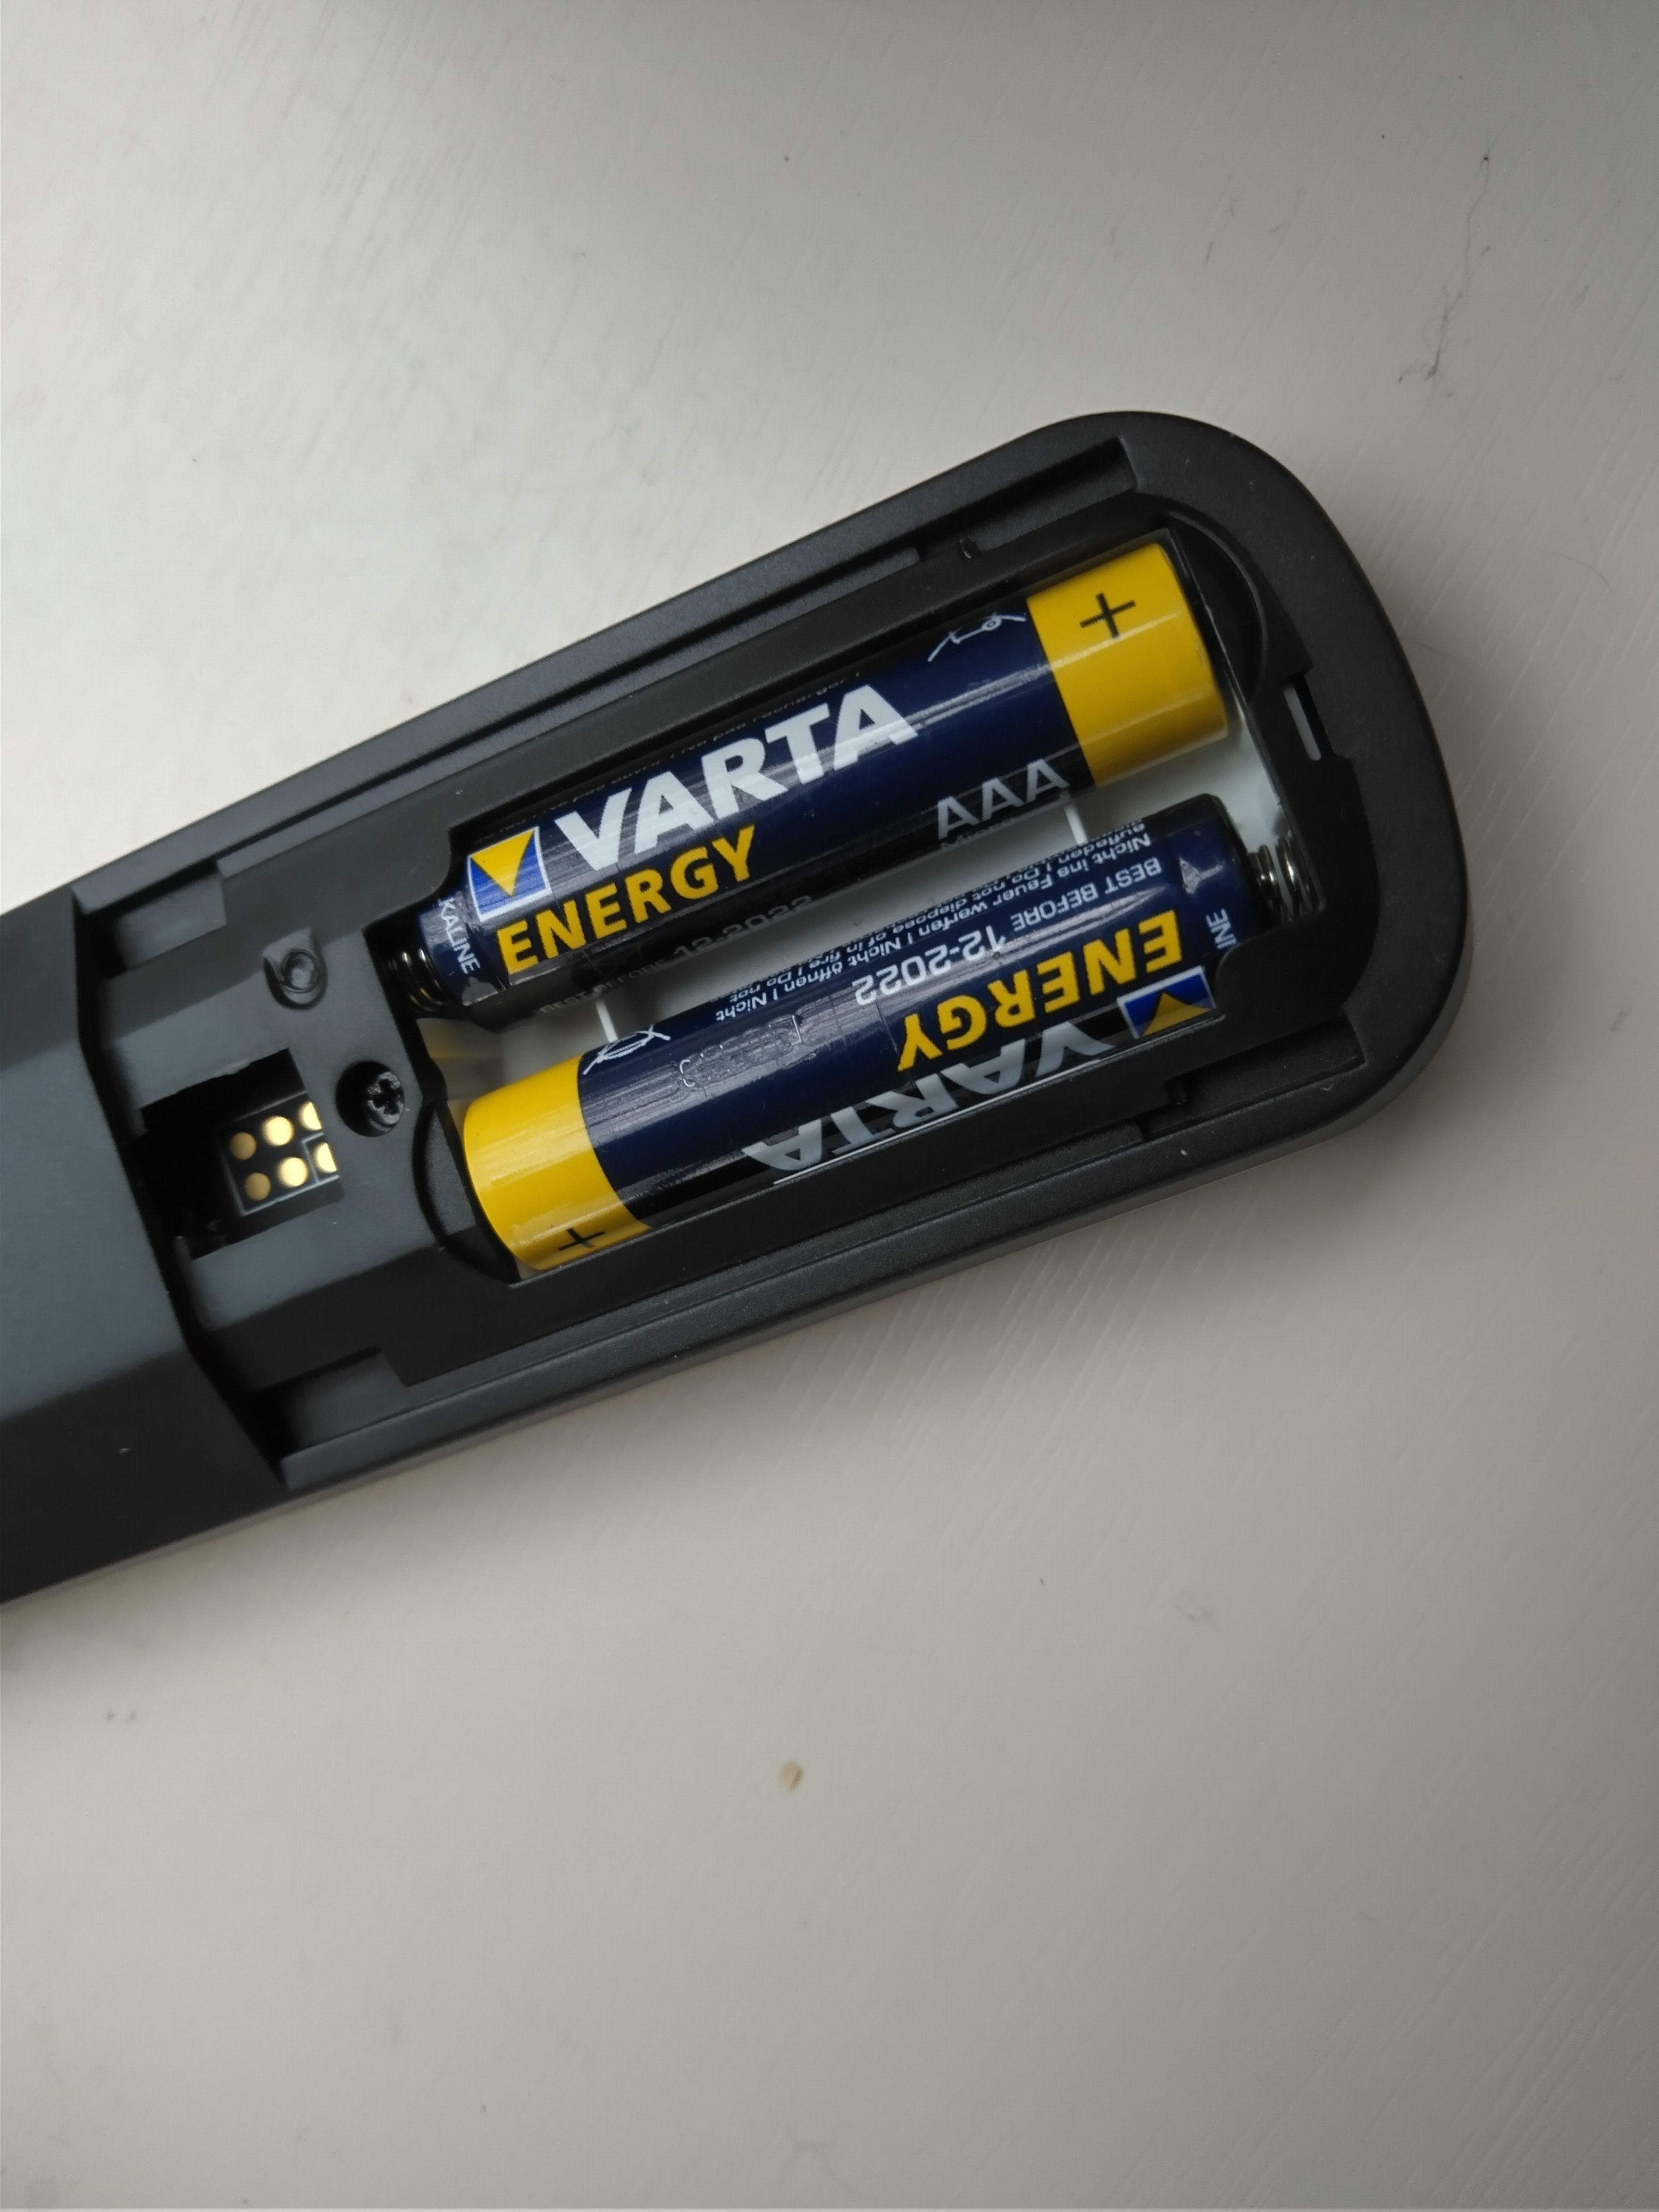 Per ongeluk molecuul Voorwaarde Batterij vervangen afstandsbediening KPN | KPN Community